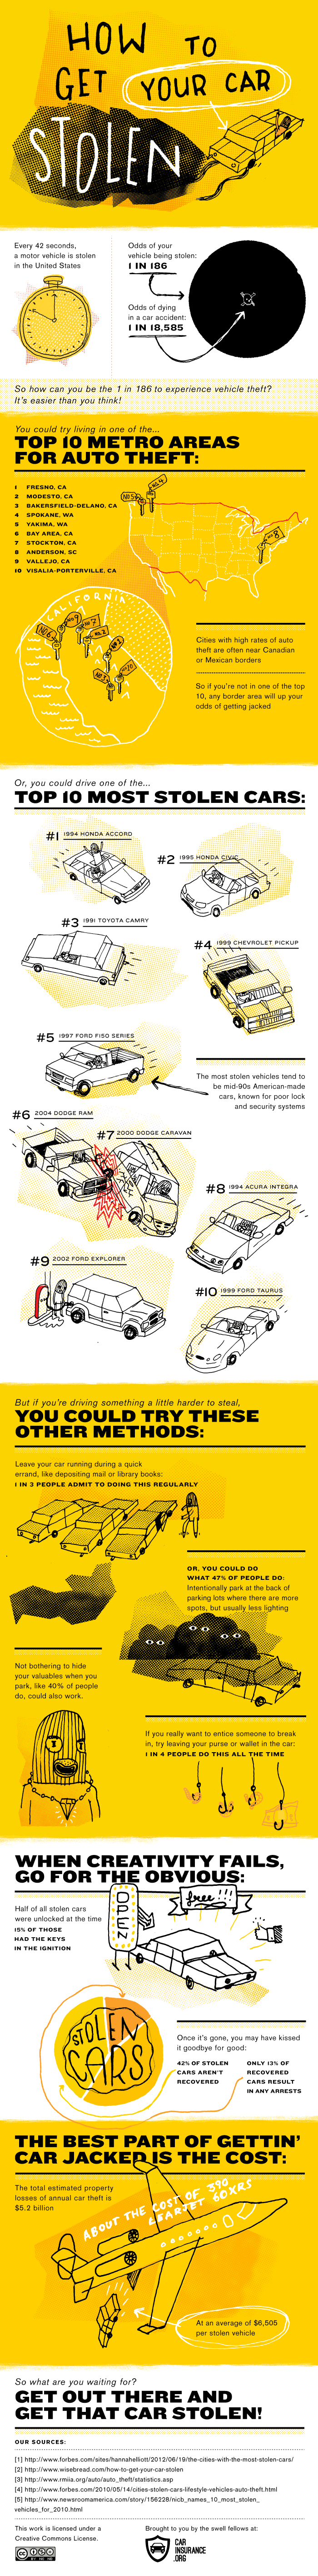 how-to-get-your-car-stolen_5058fac1bfa3a